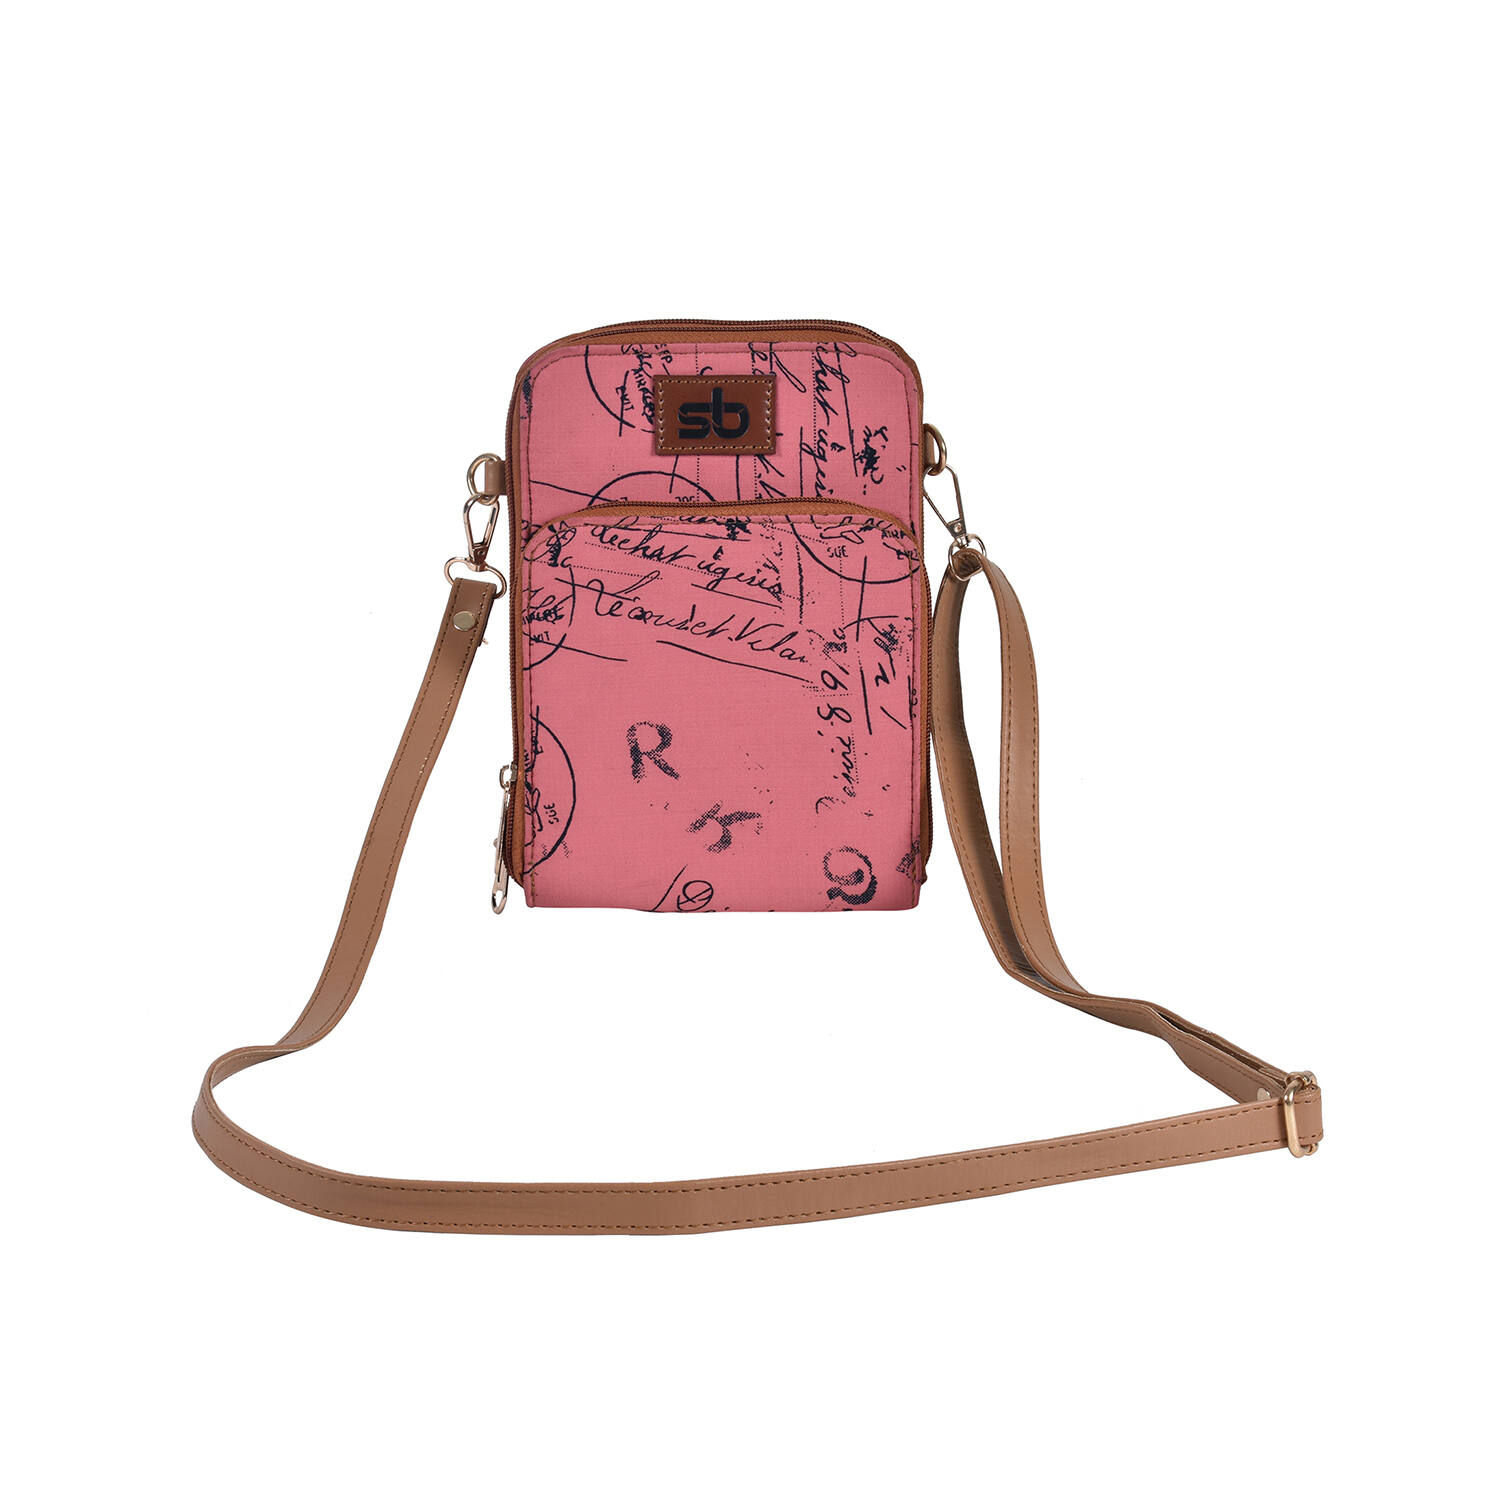 Buy Teardrop Sling Bag Cream Vegan Leather Designer Vinyl Travel Bag Gift  for Her Crossbody Bag Online in India - Etsy